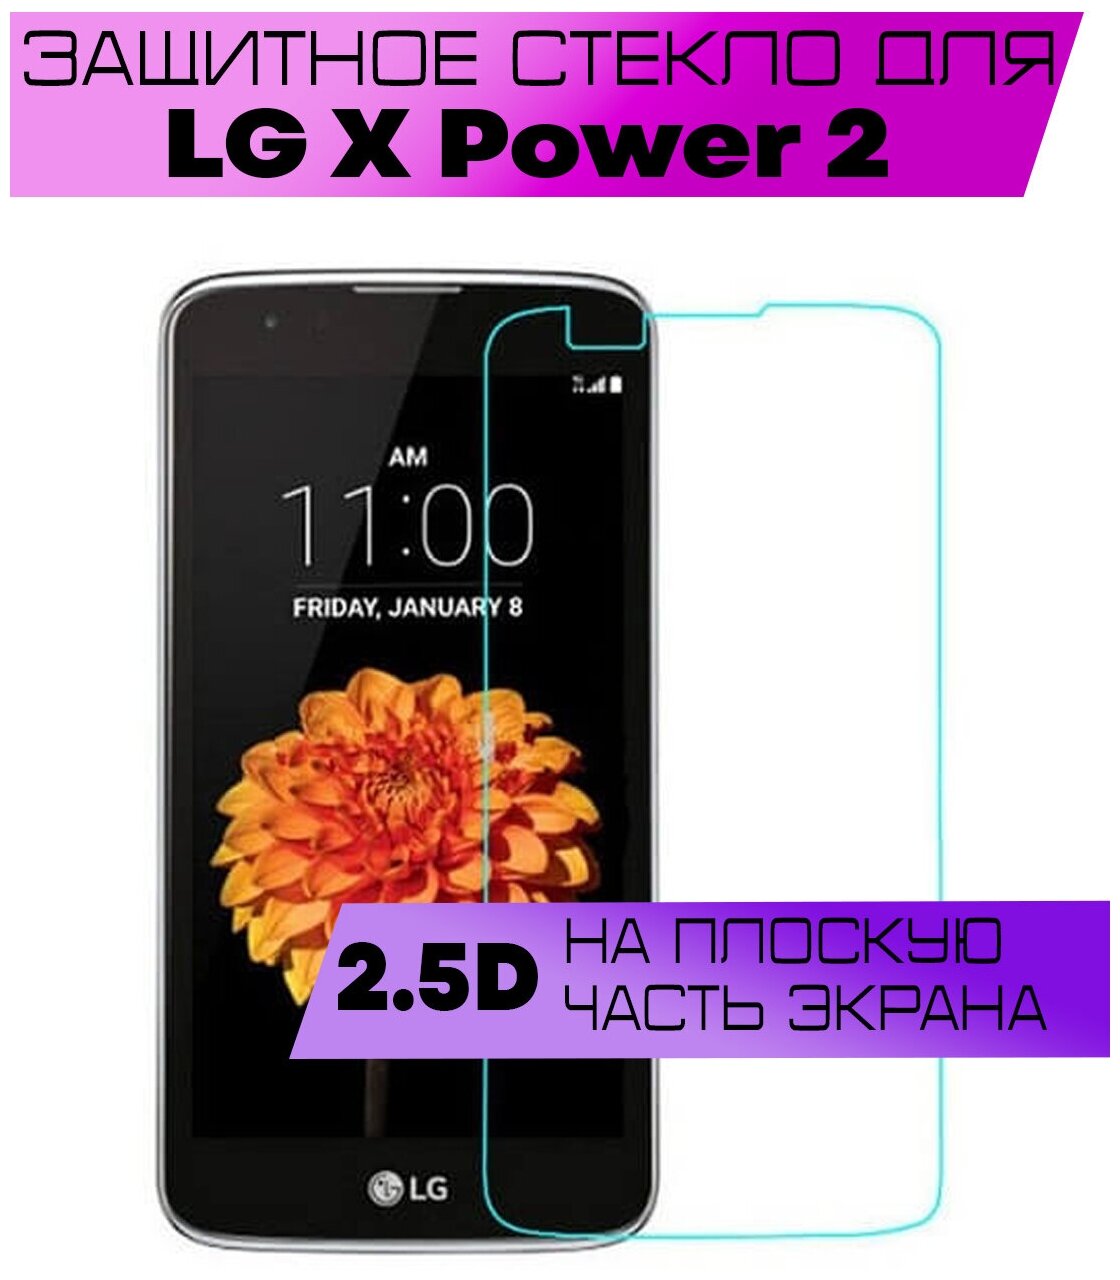 Защитное стекло BUYOO 2D для LG X Power 2 M320, Элджи Х повер 2 м320 (не на весь экран, без рамки)